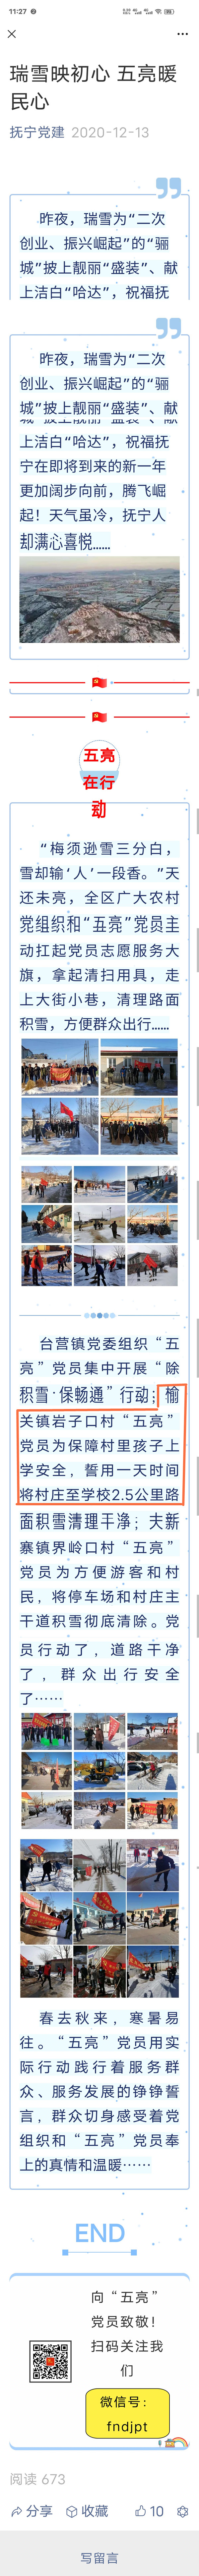 抚宁区岩子口村公益扫雪背后的故事图3